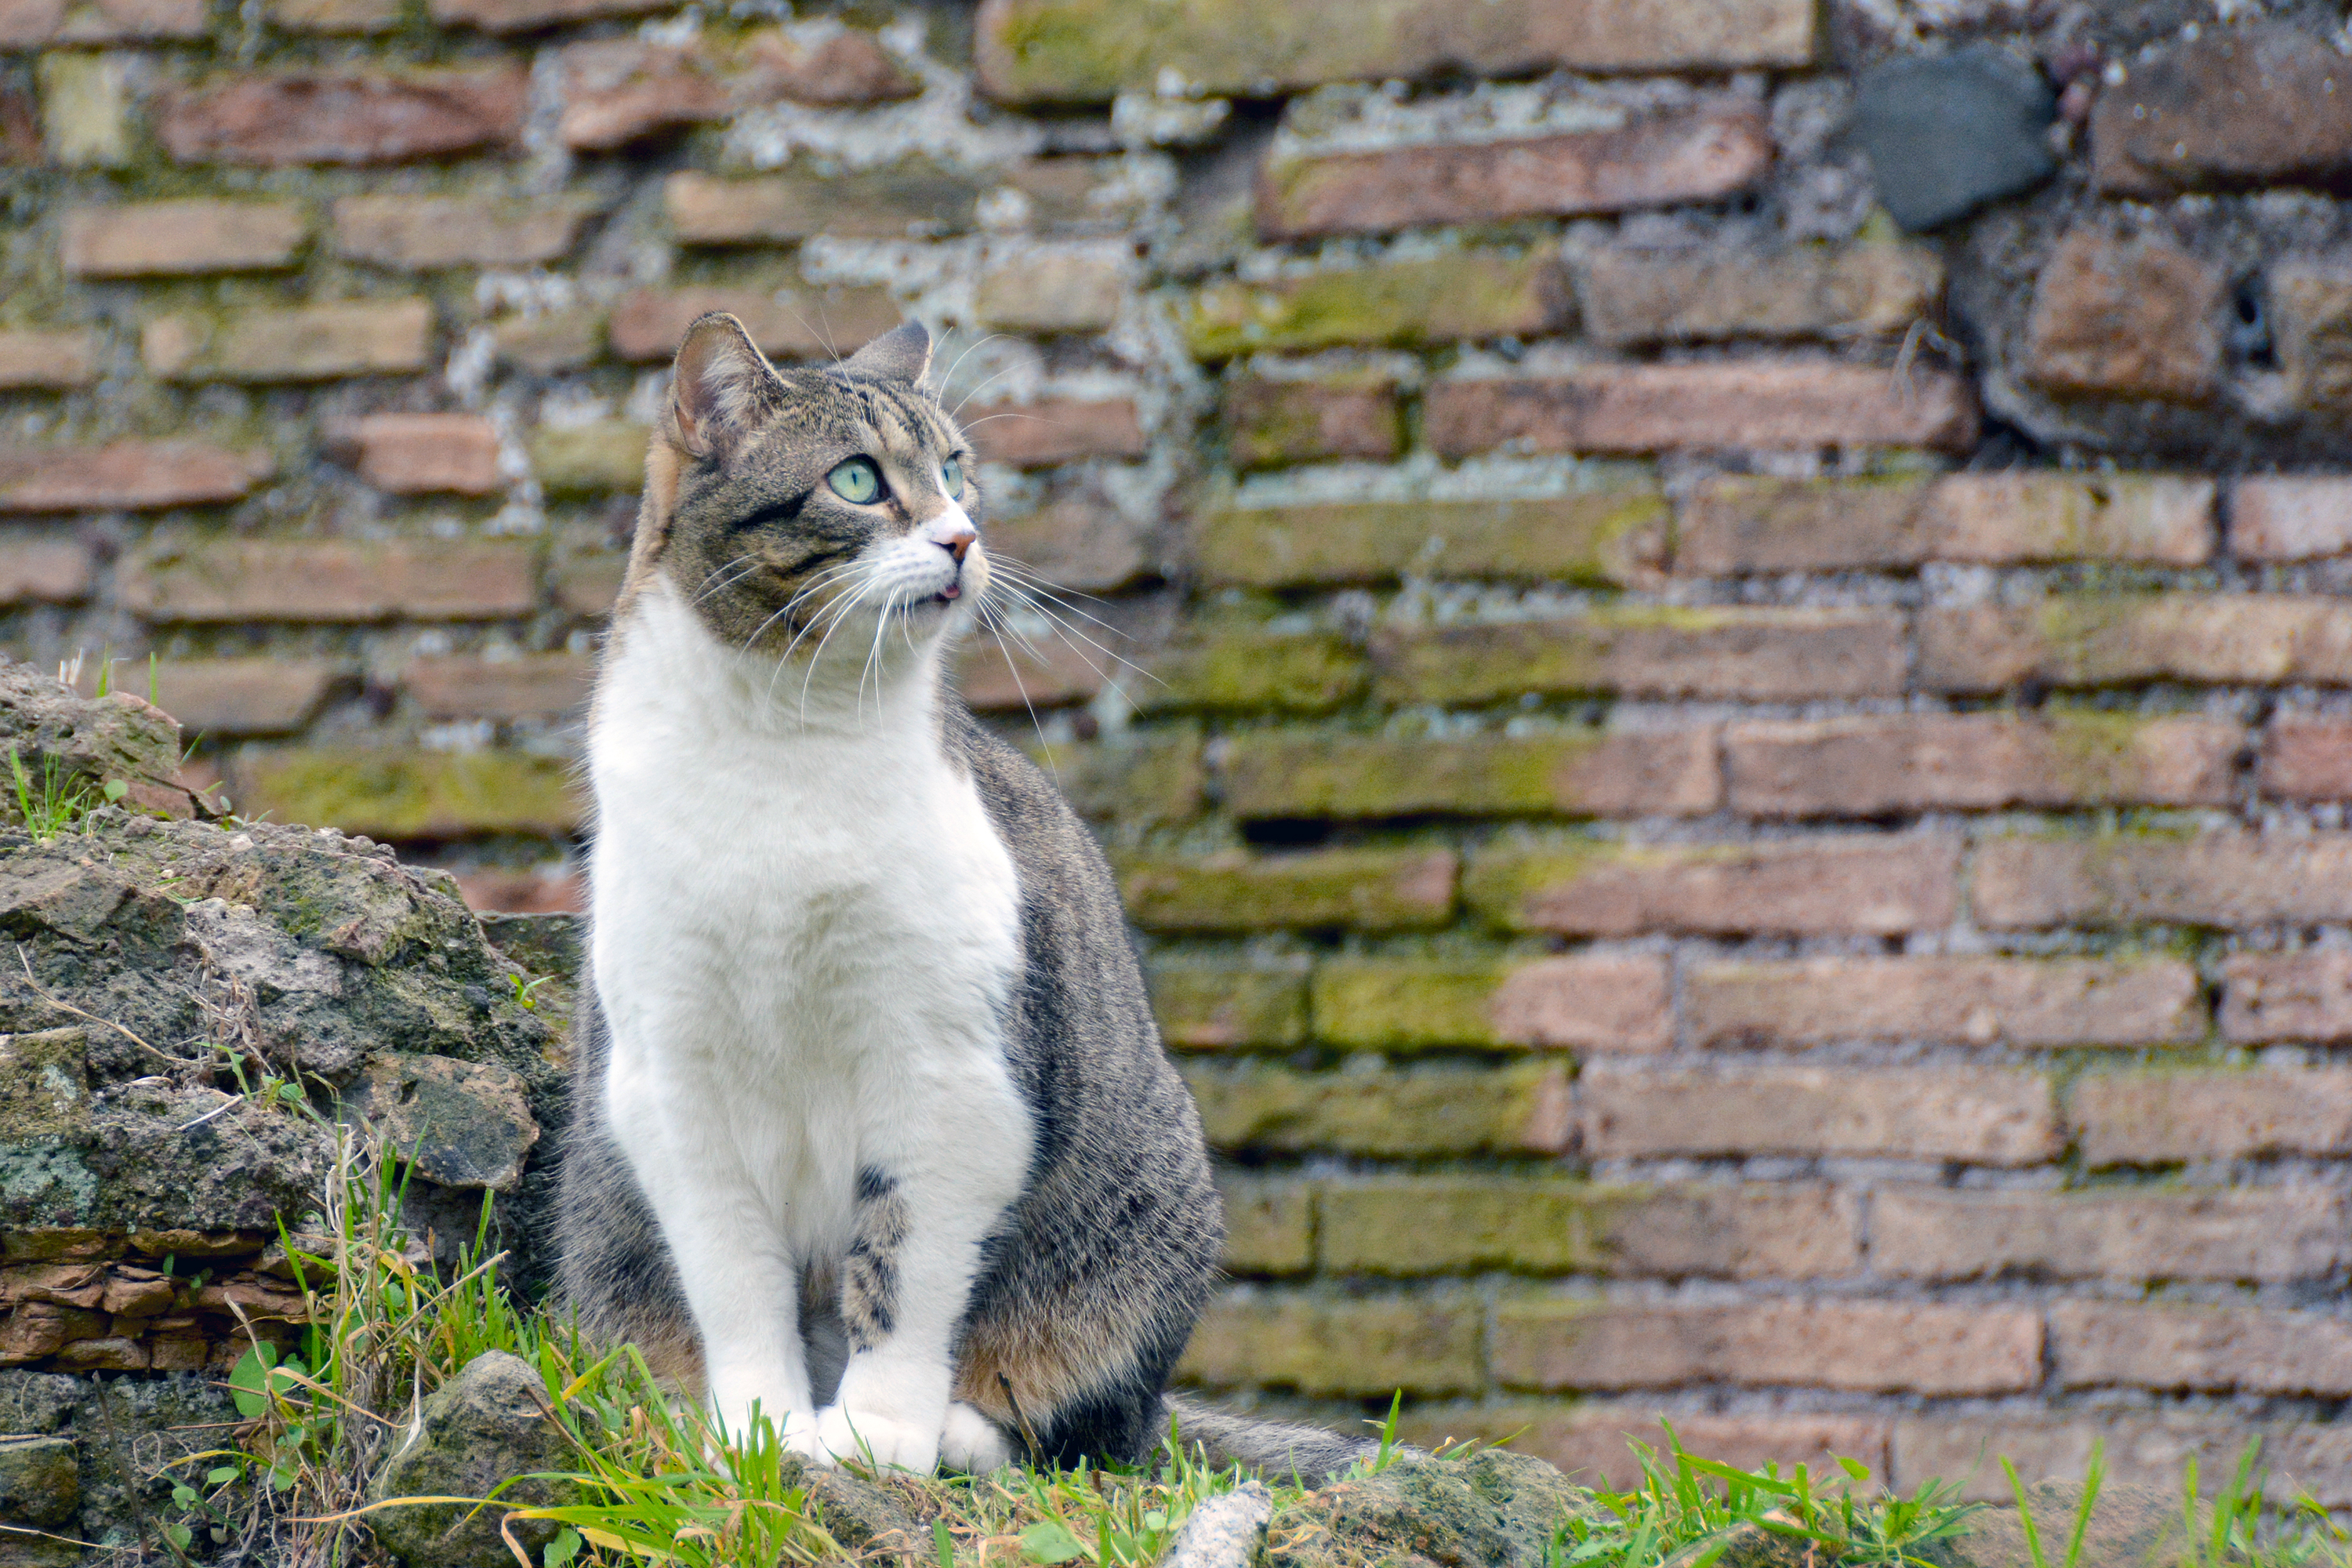 rom torre argentina cat sanctuary